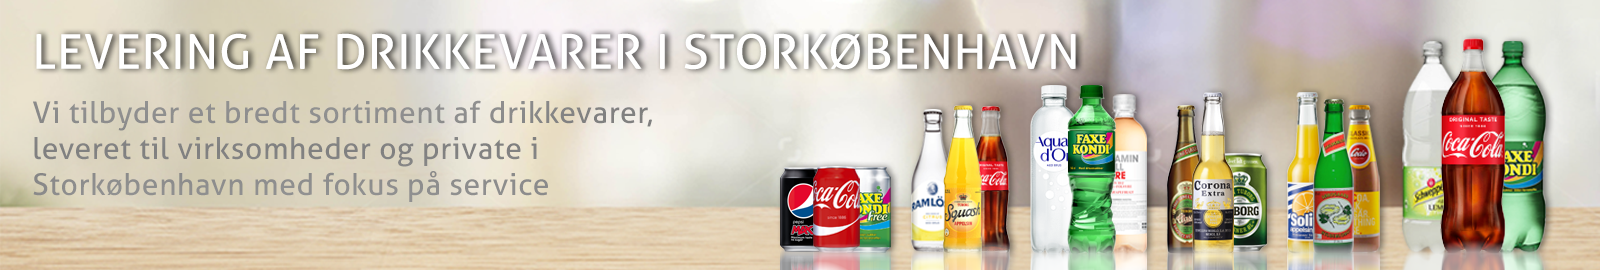 sodavand til virksomheder i Storkøbenhavn